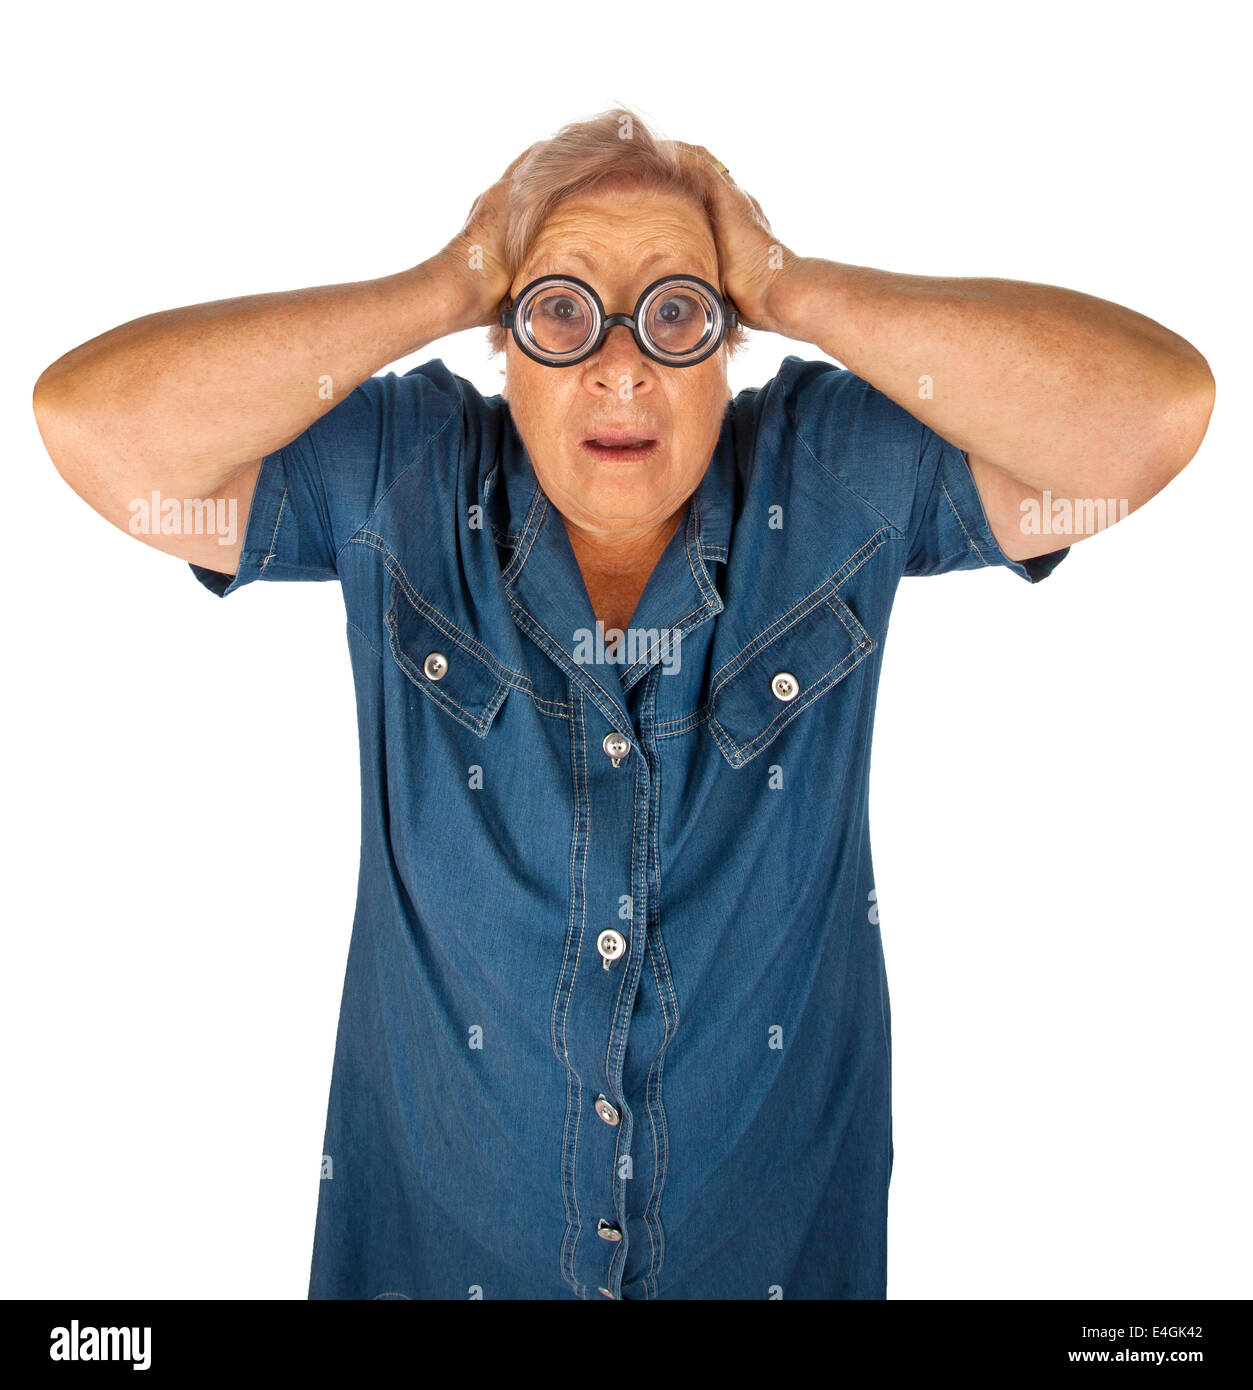 Donna anziana con espressioni di sorpresa con strani occhiali su sfondo bianco. Foto Stock